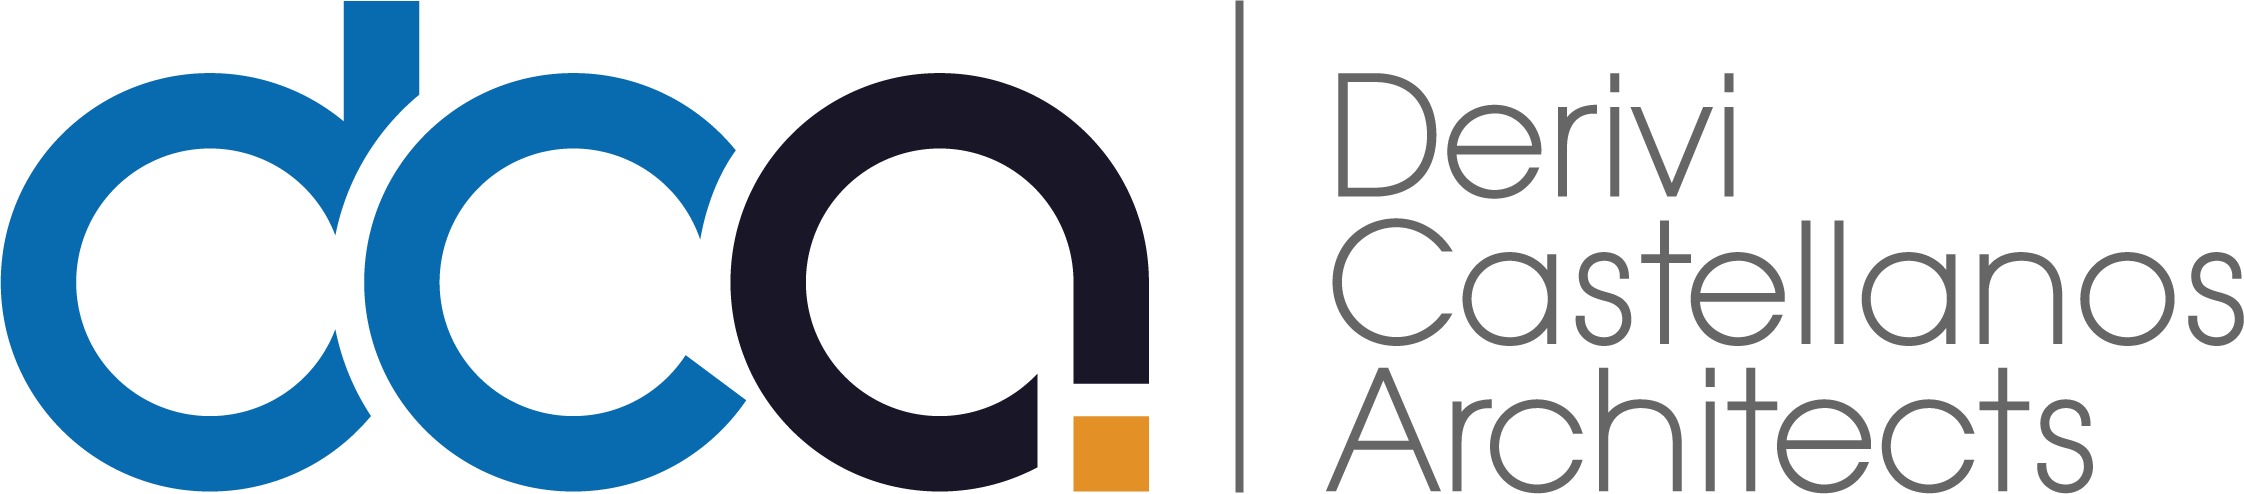 Derivi Castellanos Architects logo